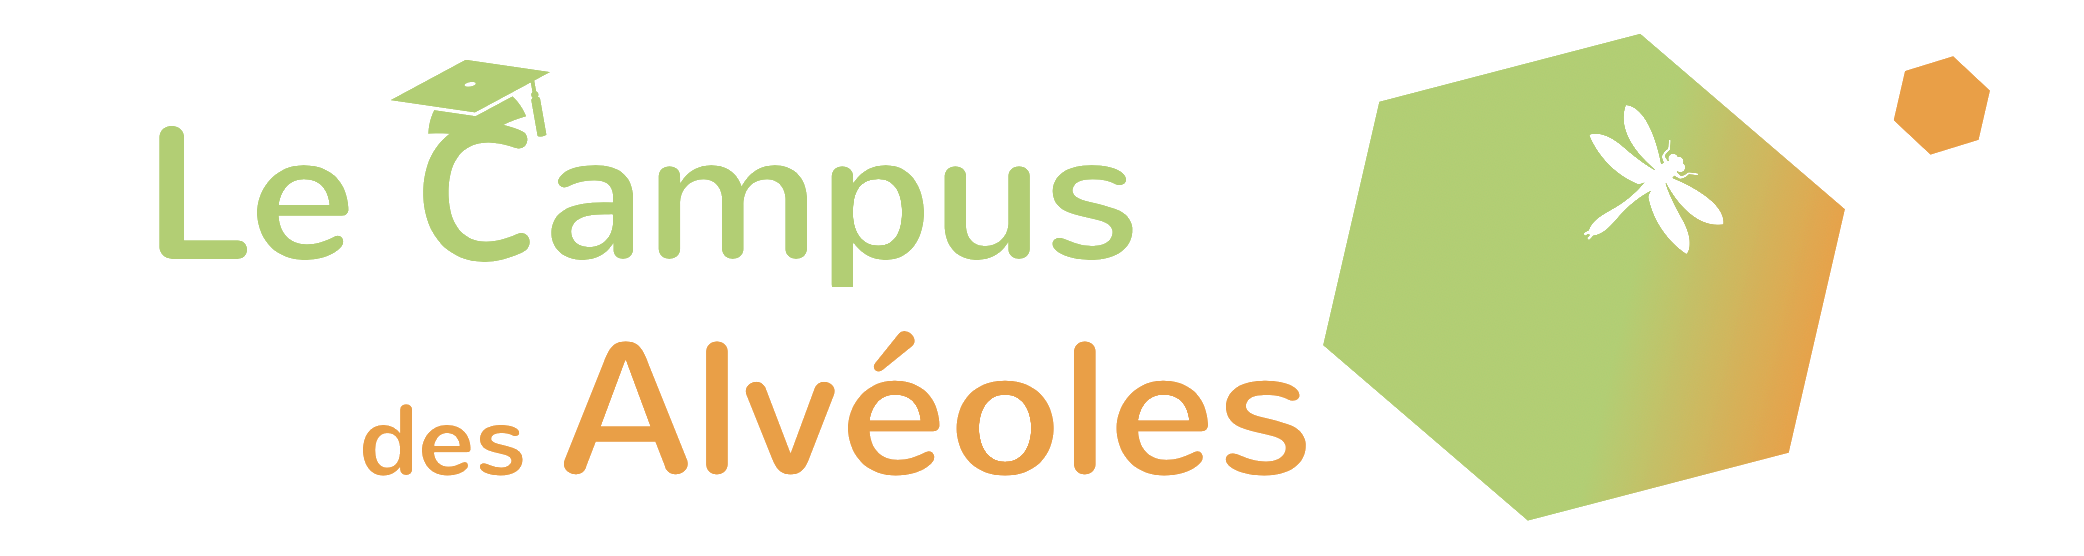 Le Campus des Alvéoles